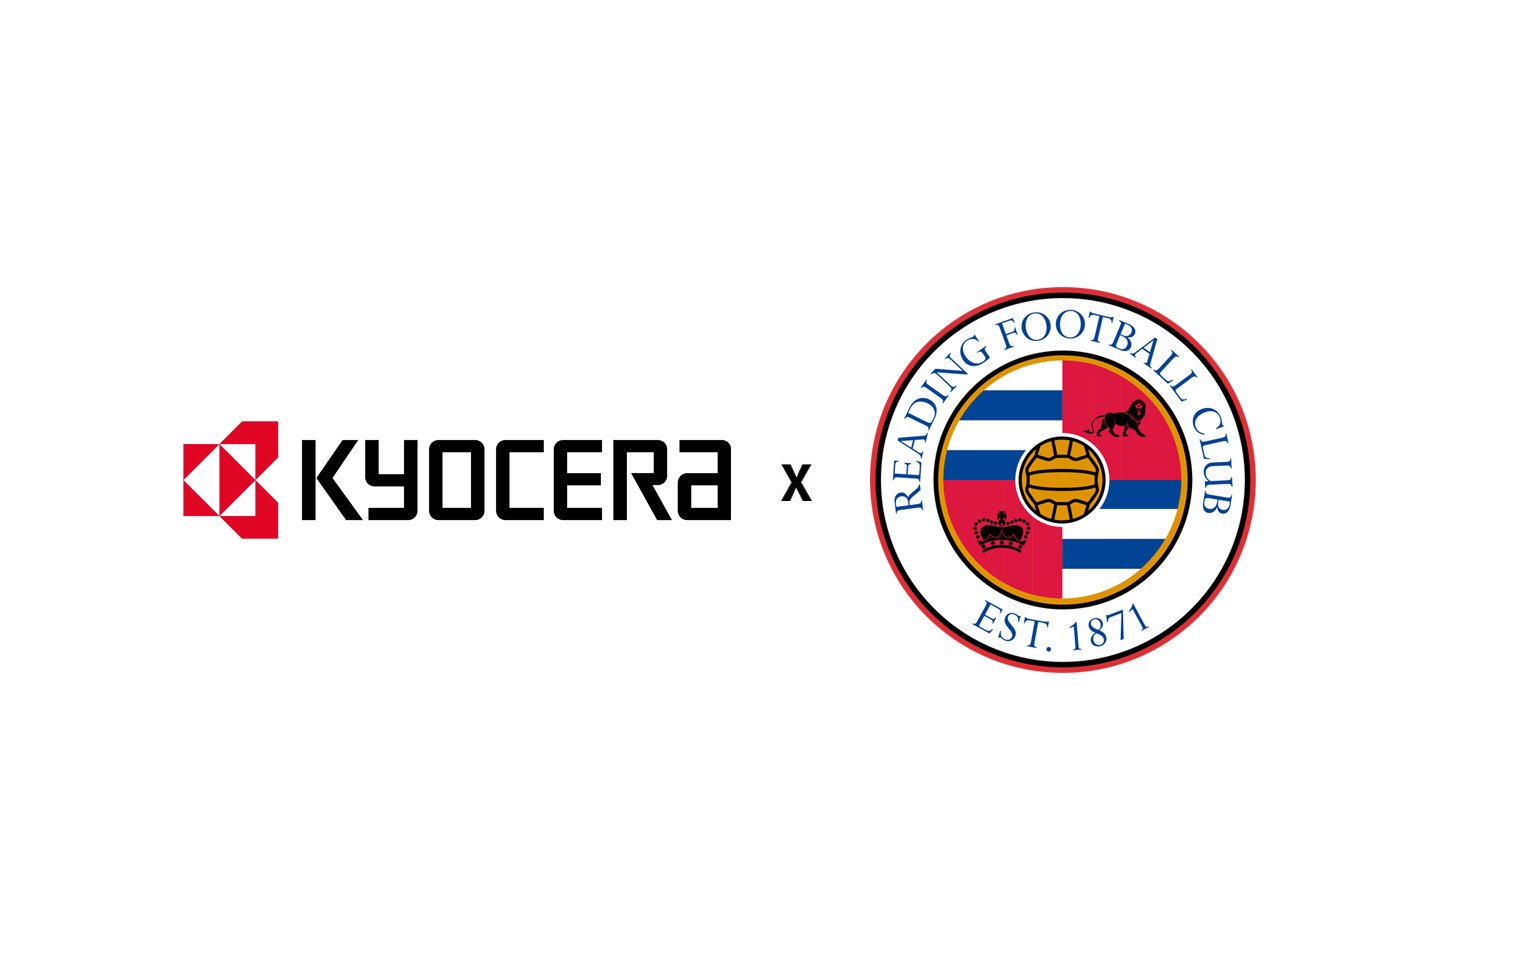 Kyocera and Reading FC Logos